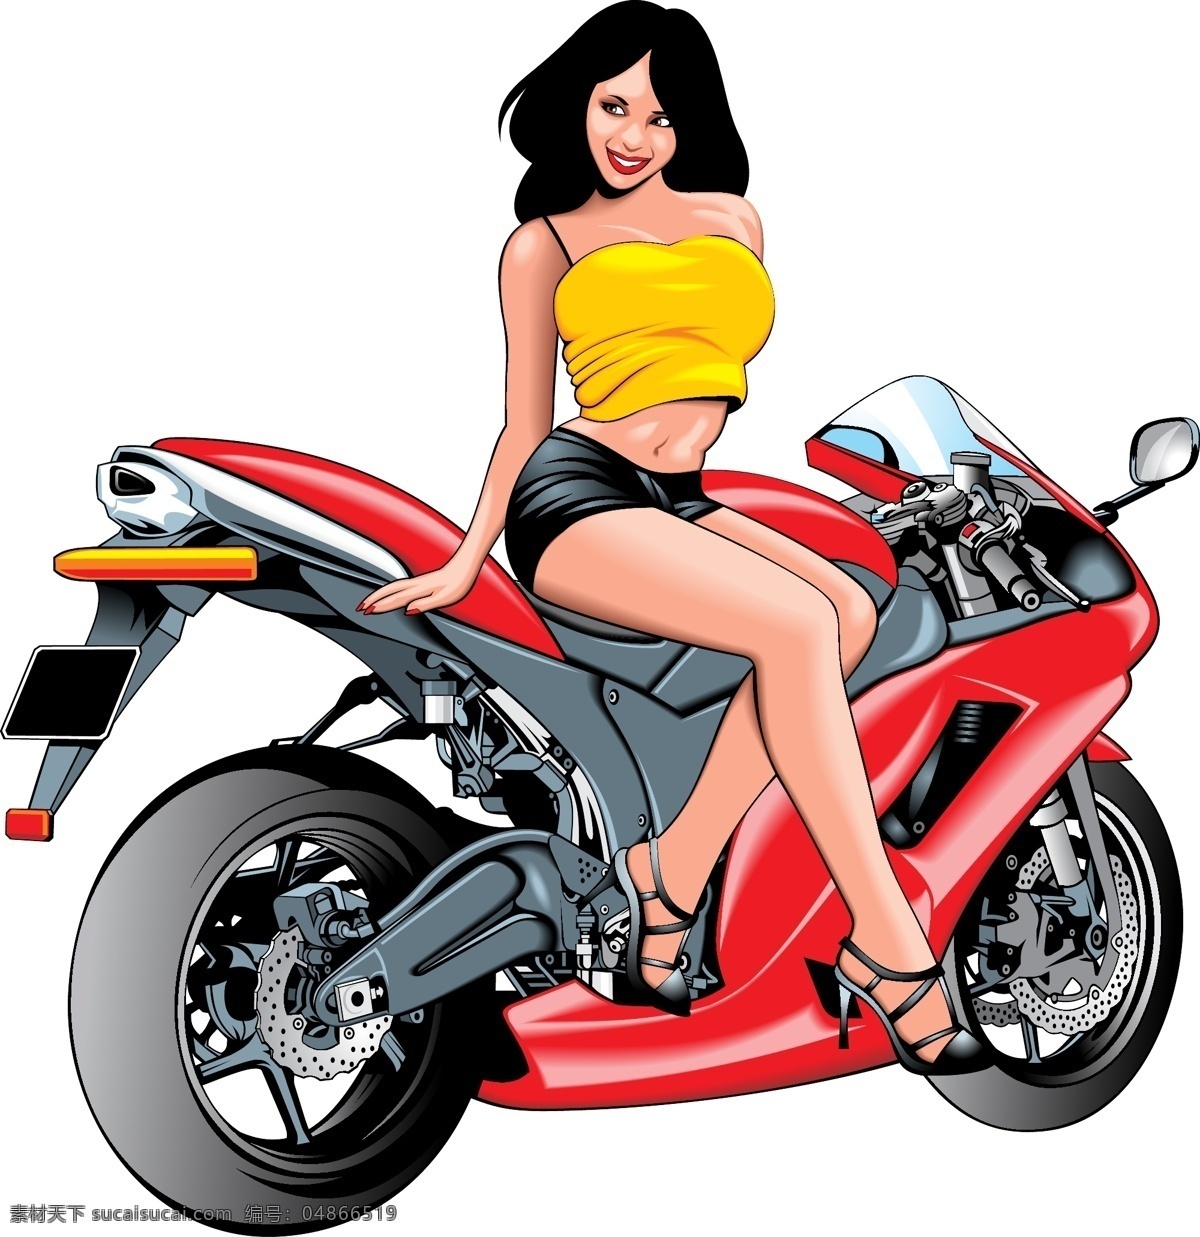 坐在 摩托 车上 美女 摩托车 摩托车设计 矢量摩托车 美女设计 矢量美女 美女素材 人物 人物素材 卡通人物 矢量素材 交通工具 现代科技 白色